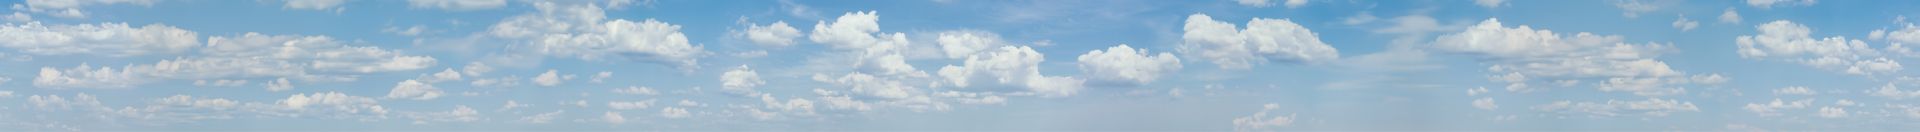 elriwa M4-H55-A - Hintergrundplatte aus PVC-Hartschaum 'Himmel mit Wolken', Höhe 55 cm, Bild A